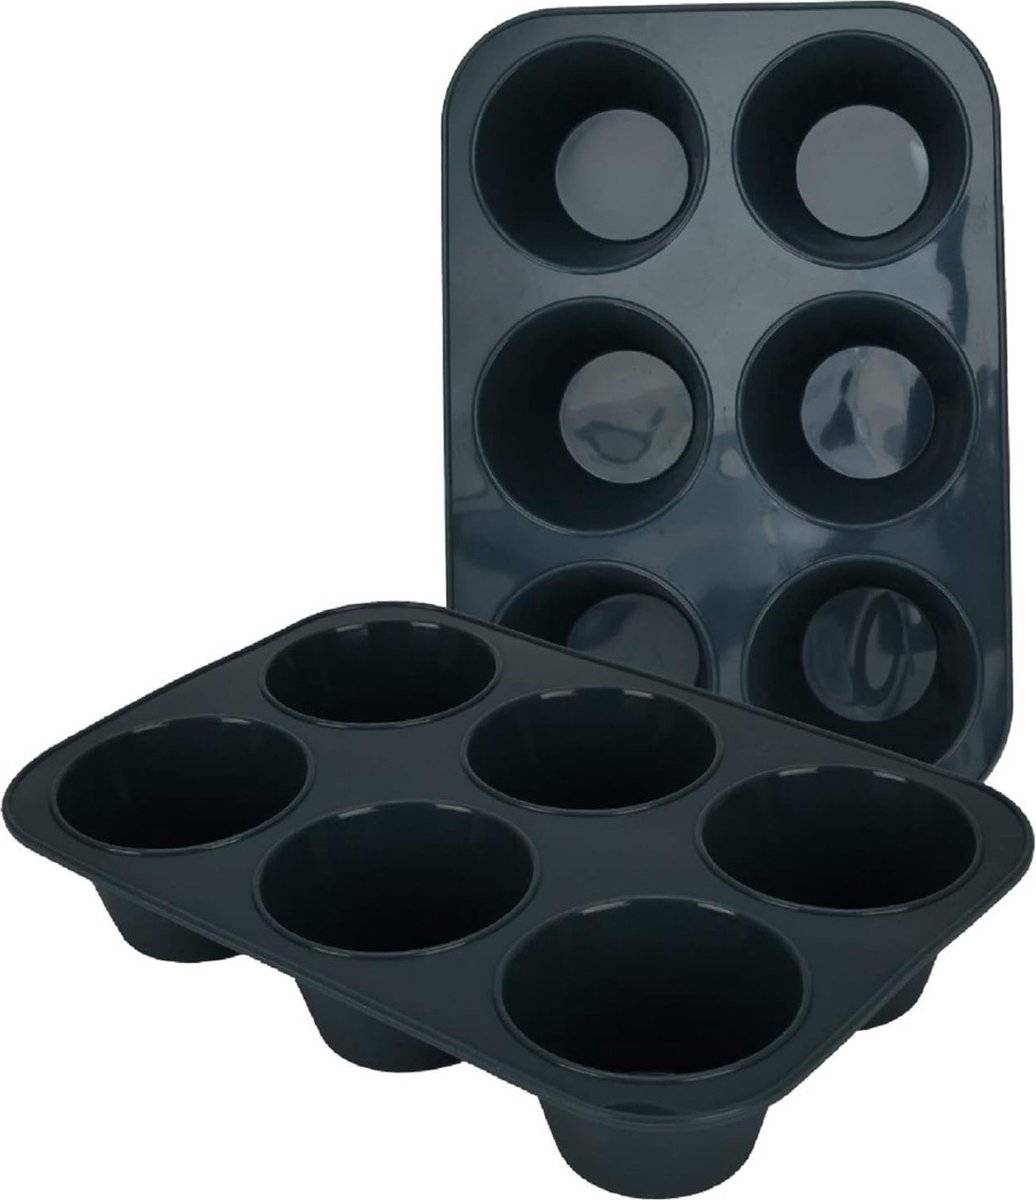 2 stuks grote muffinvormen van siliconen voor 6 muffins, anti-aanbaklaag, bakplaat voor cupcakes, brownies, cake, pudding, 27,8 x 19 x 5 cm, grijs